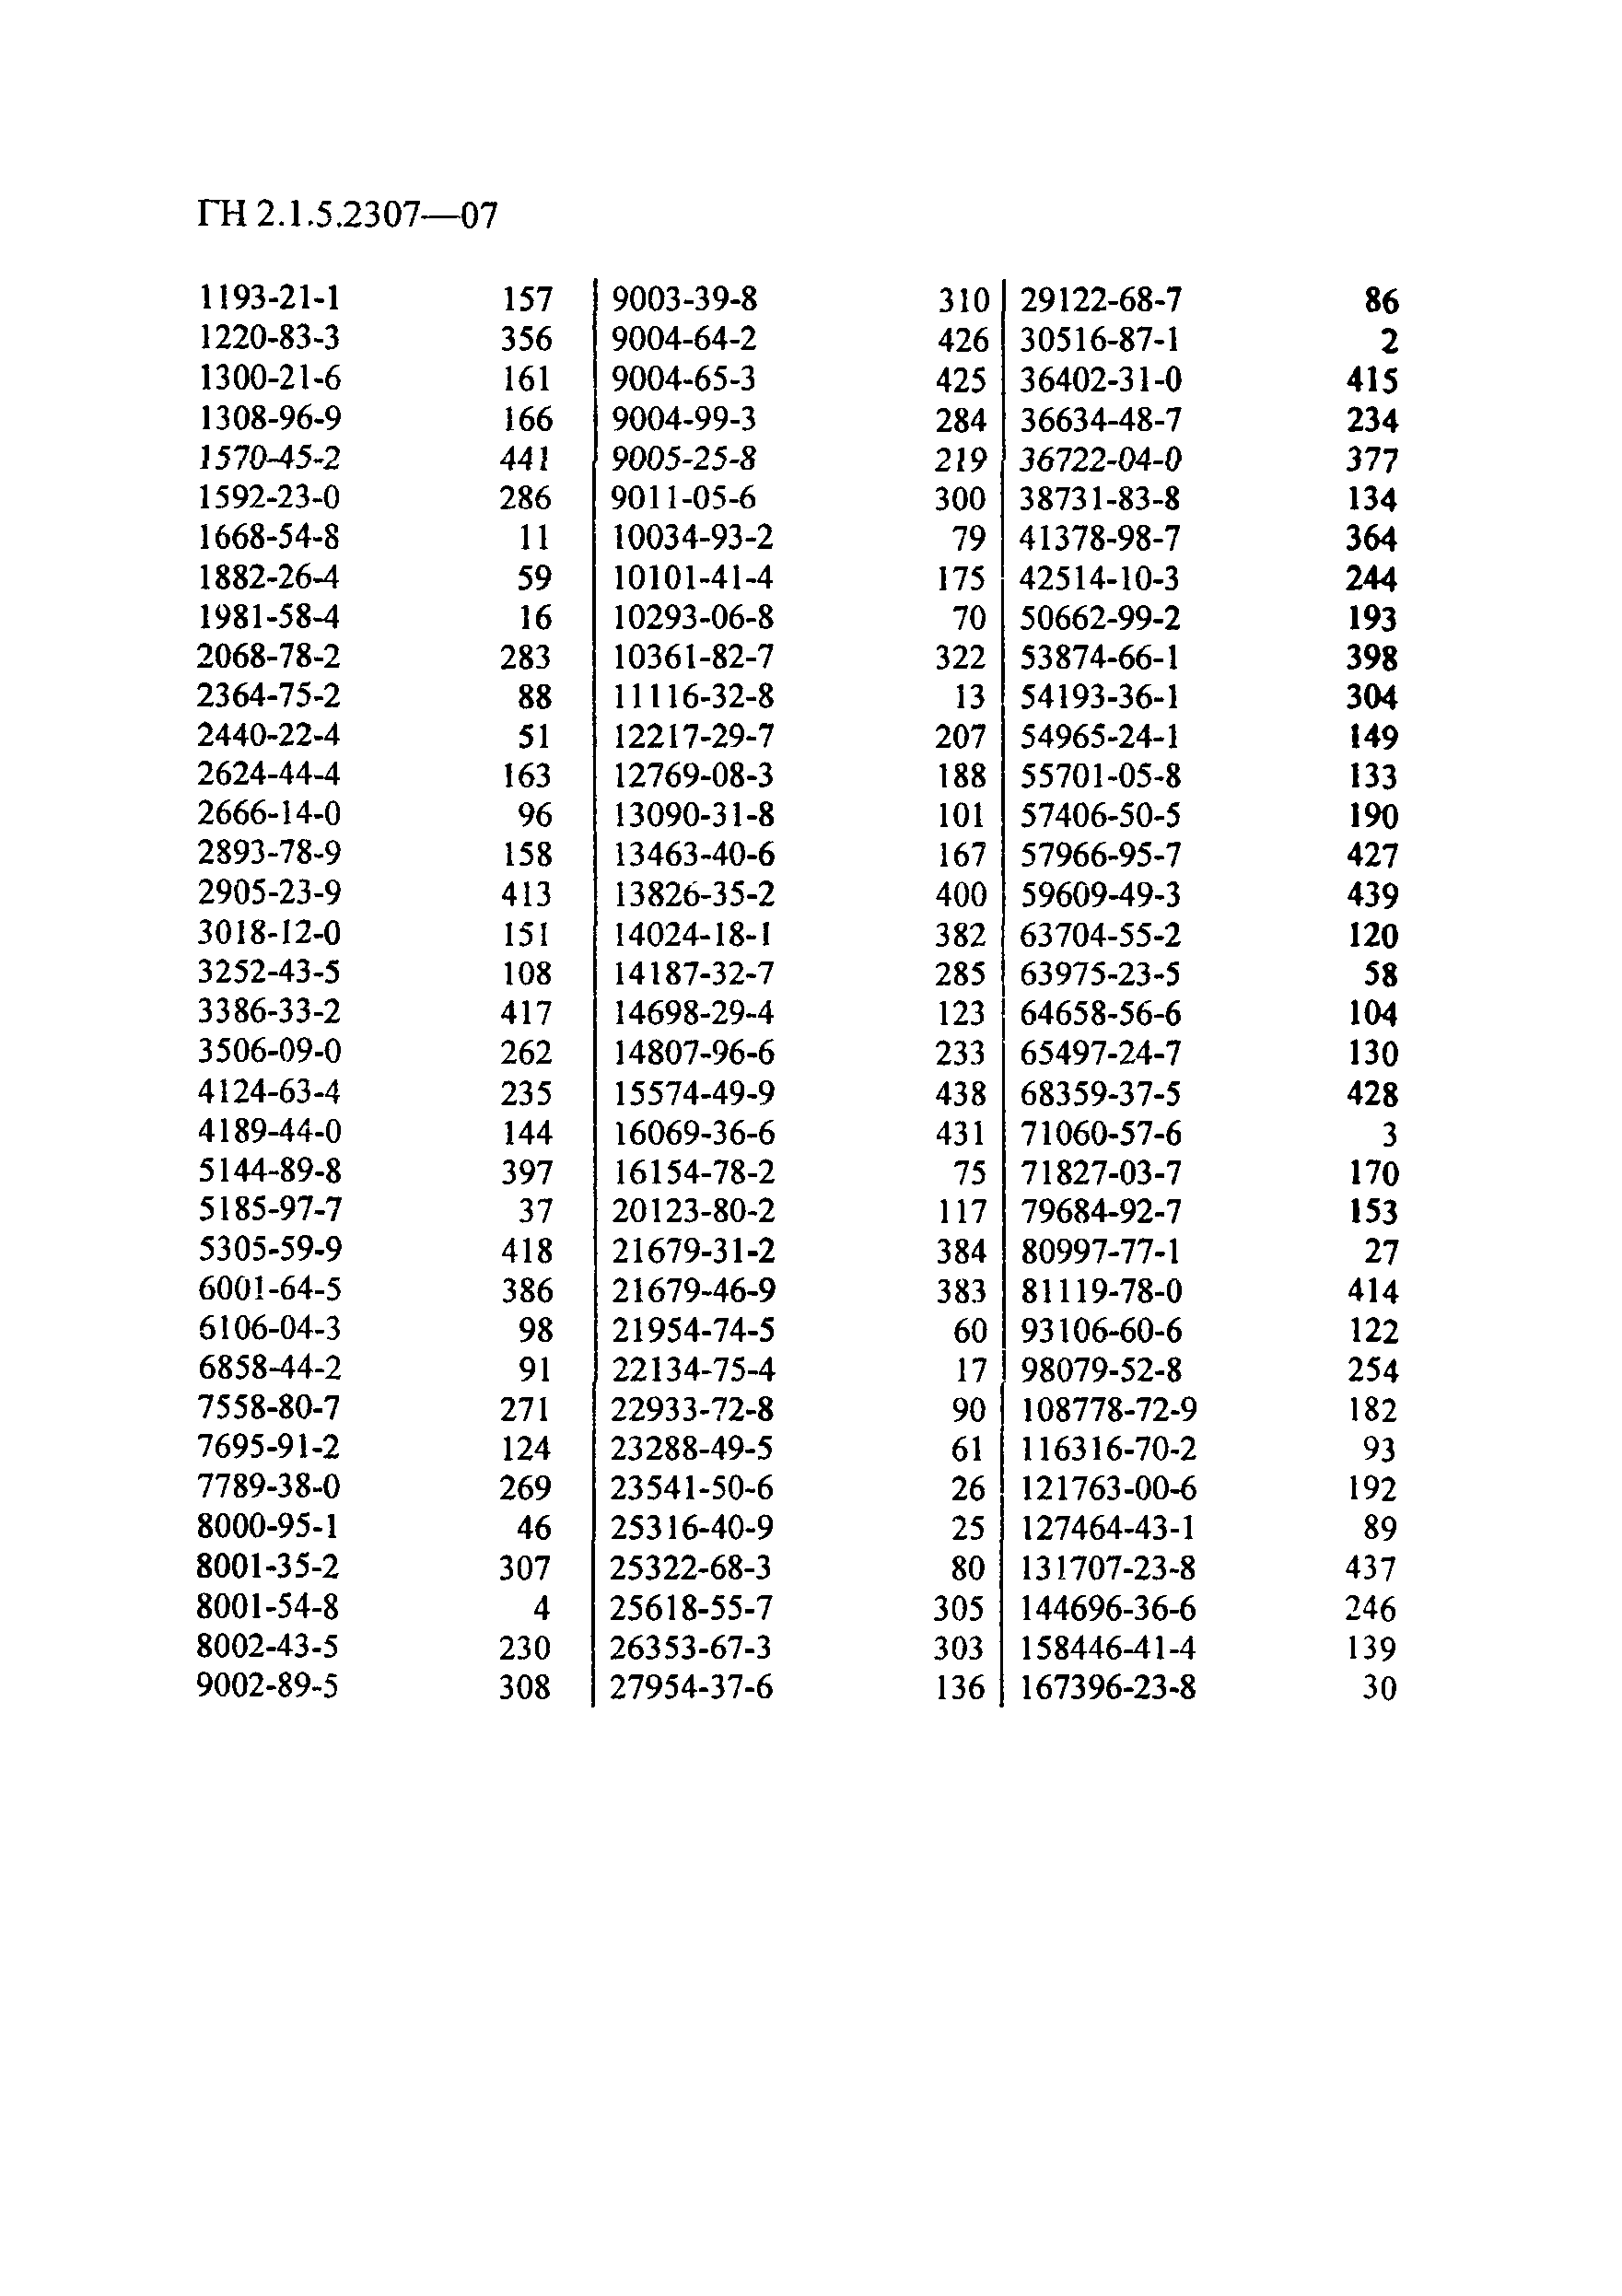 ГН 2.1.5.2307-07